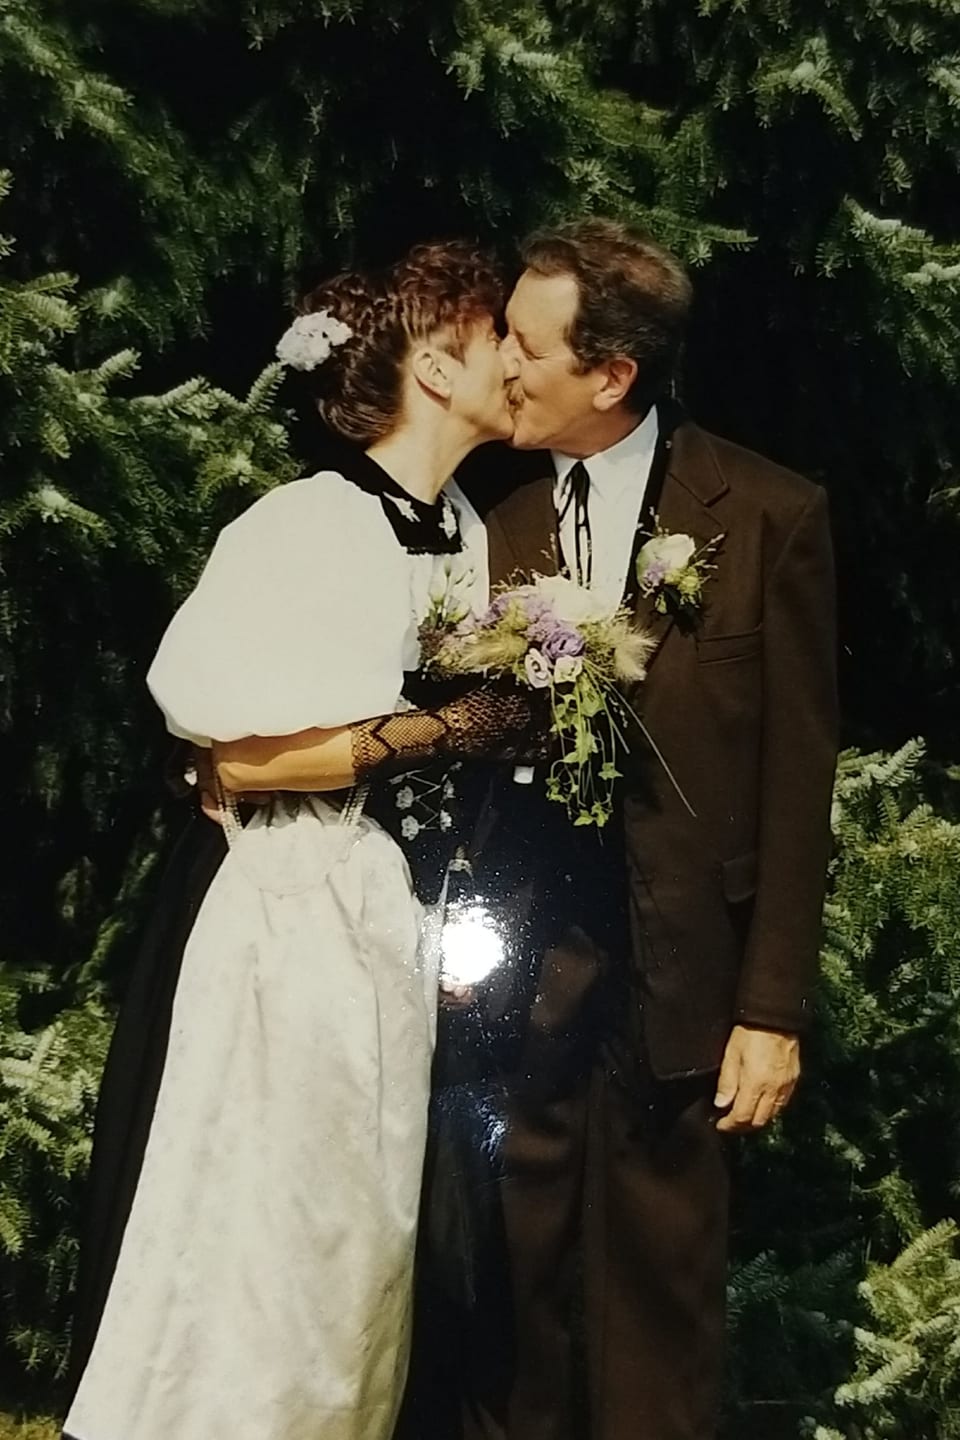 Das Brautpaar, sie in Berner Tracht, er in braunem Anzug, steht küssend da.